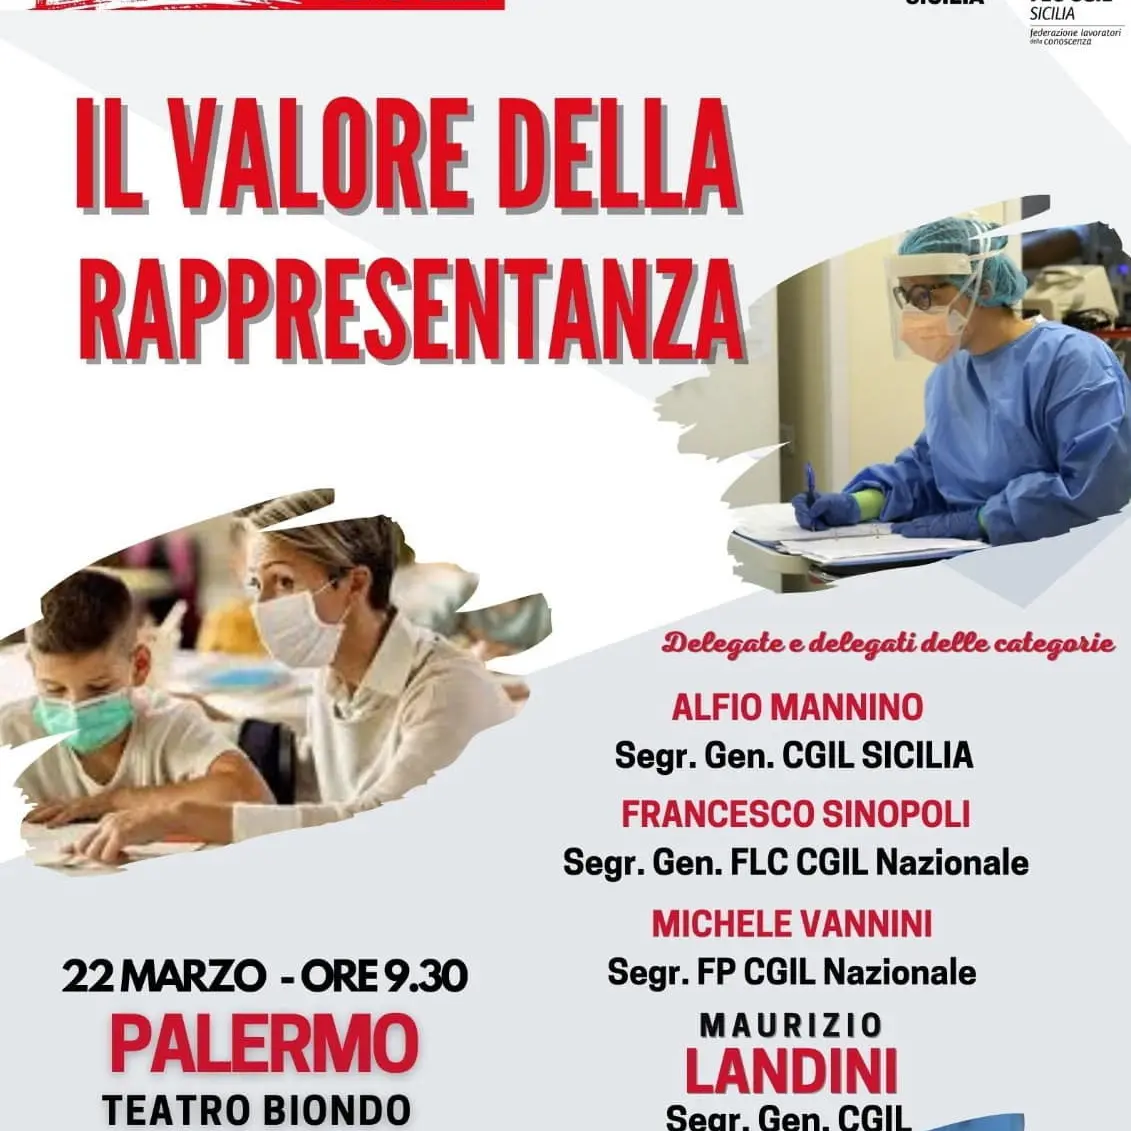 Rsu 2022: ‘Il valore della rappresentanza’, il 22 marzo iniziativa a Palermo con Landini